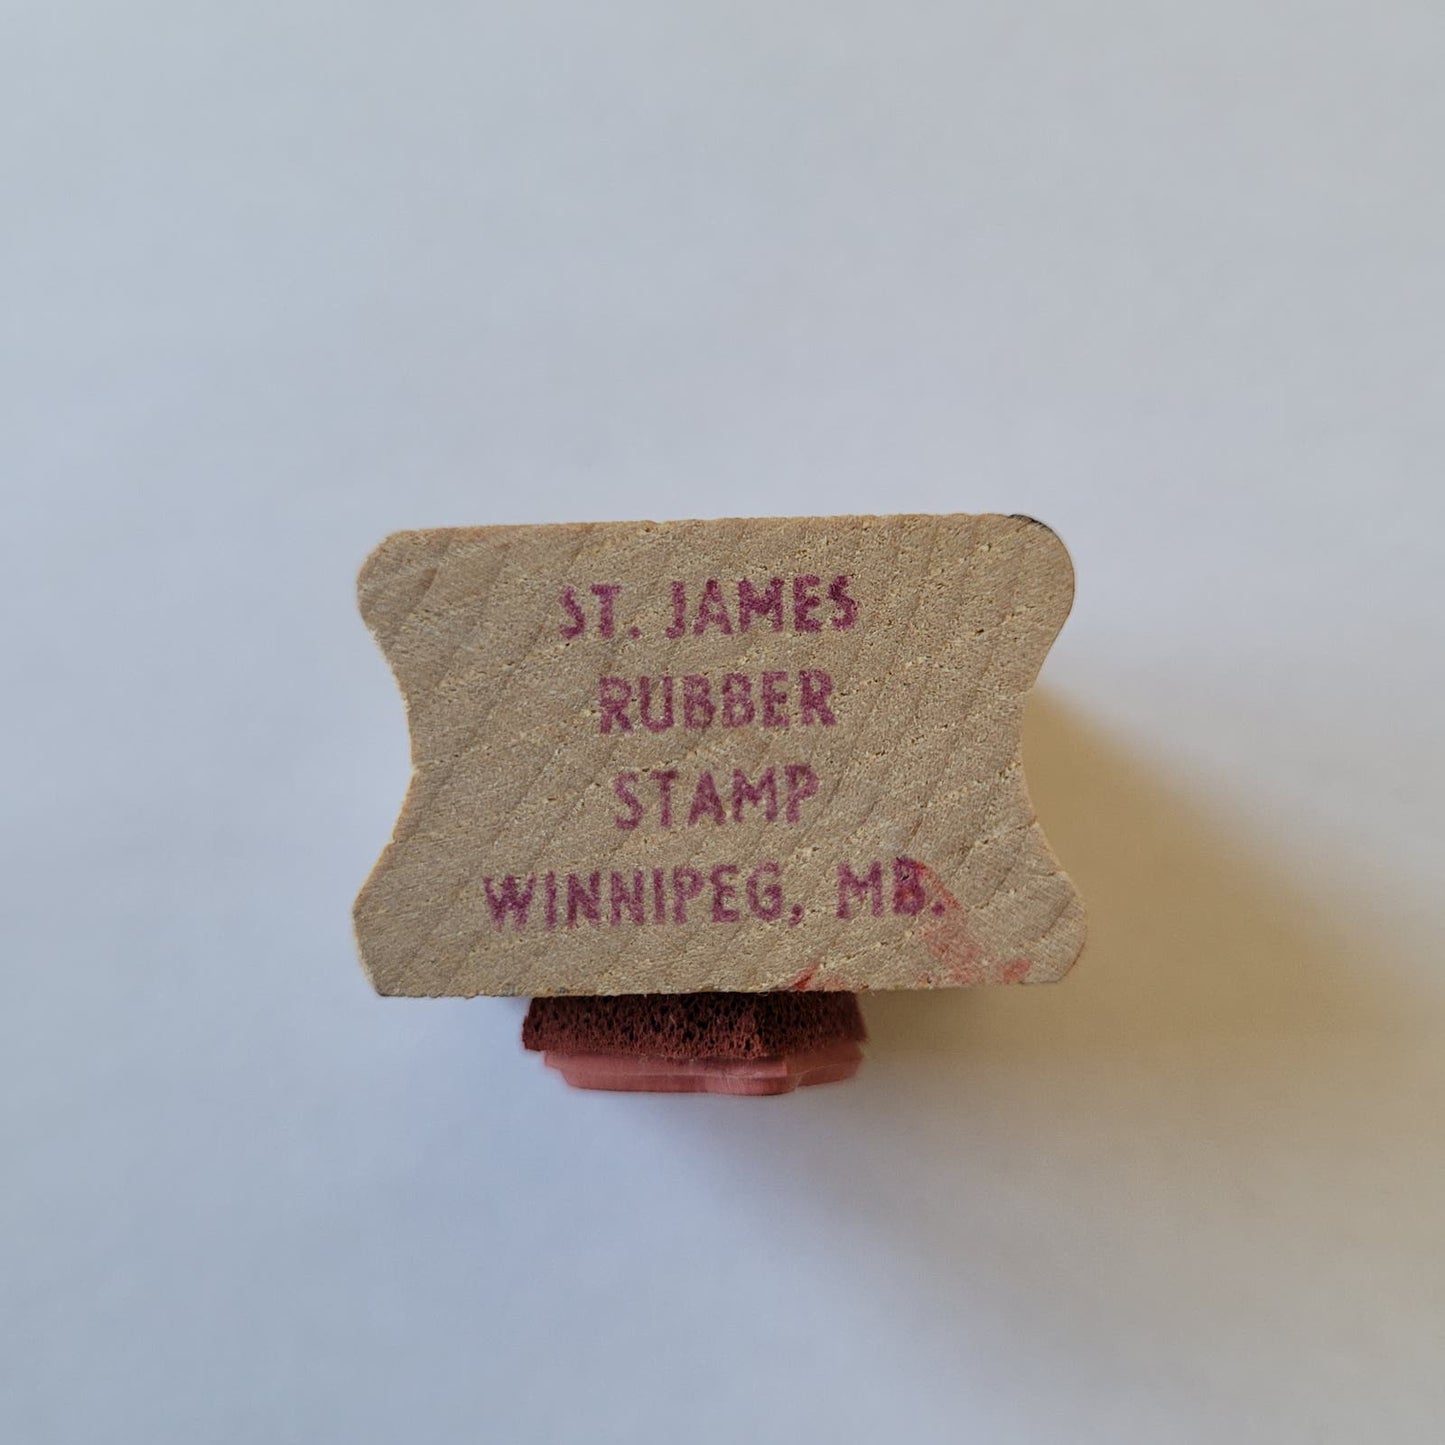 Vintage St. James Rubber Stamp - Planet